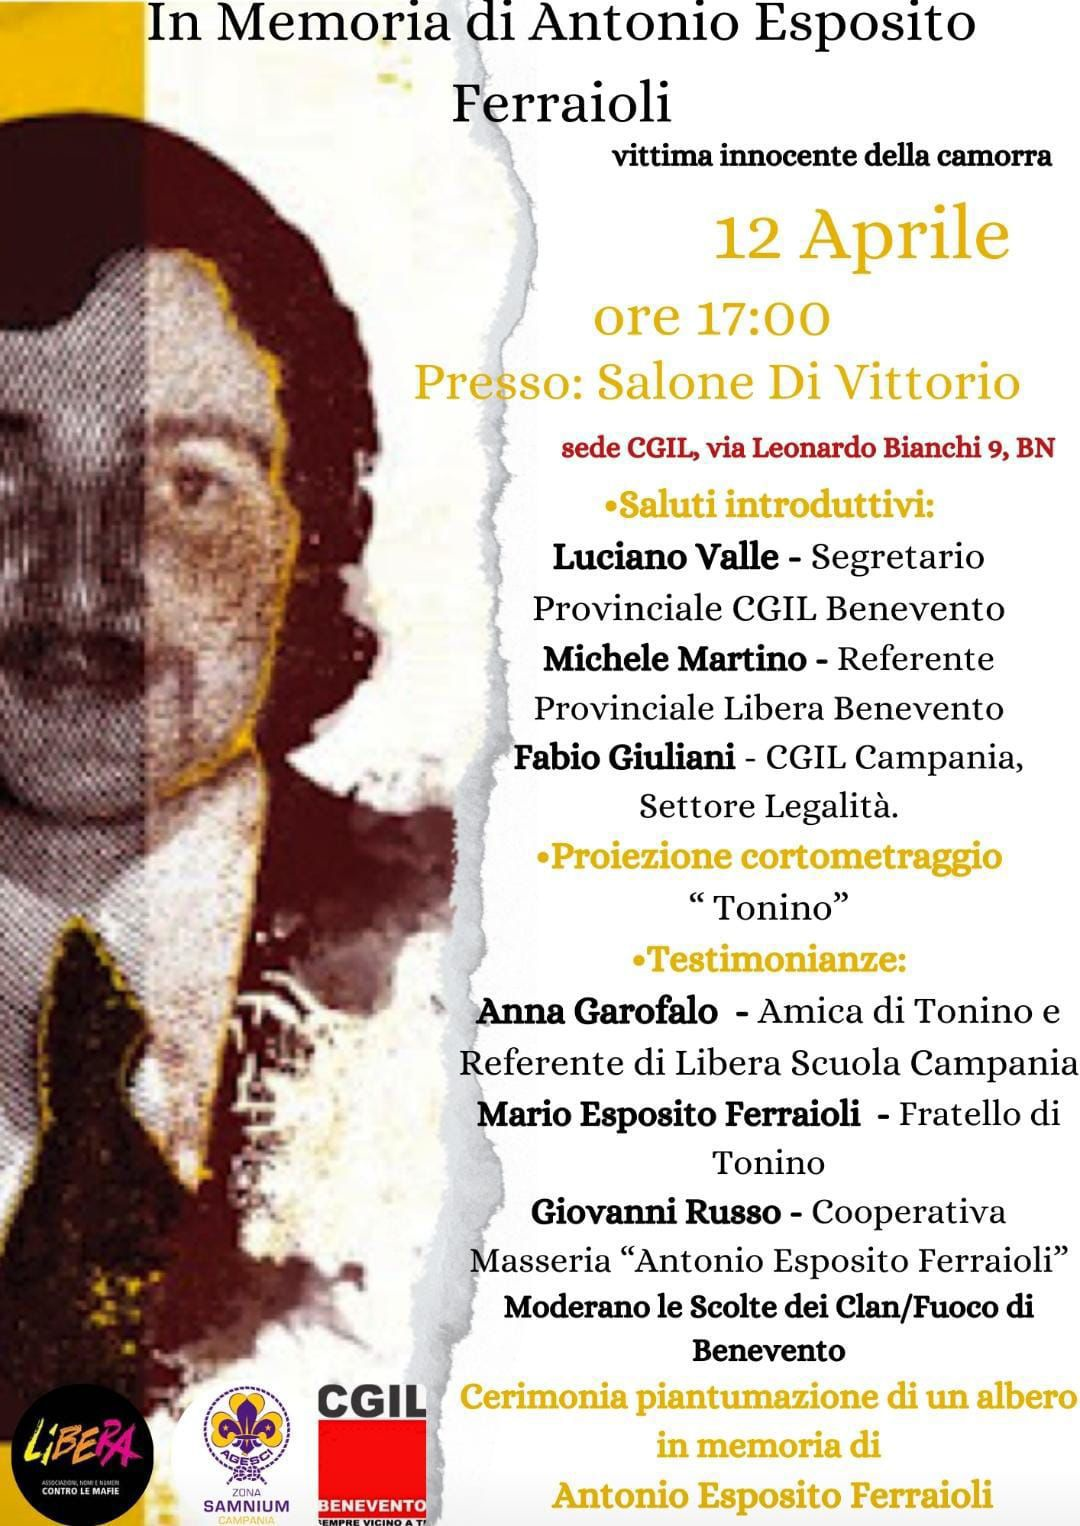 Venerdì 12 Aprile evento in memoria di Antonio Esposito Ferraioli